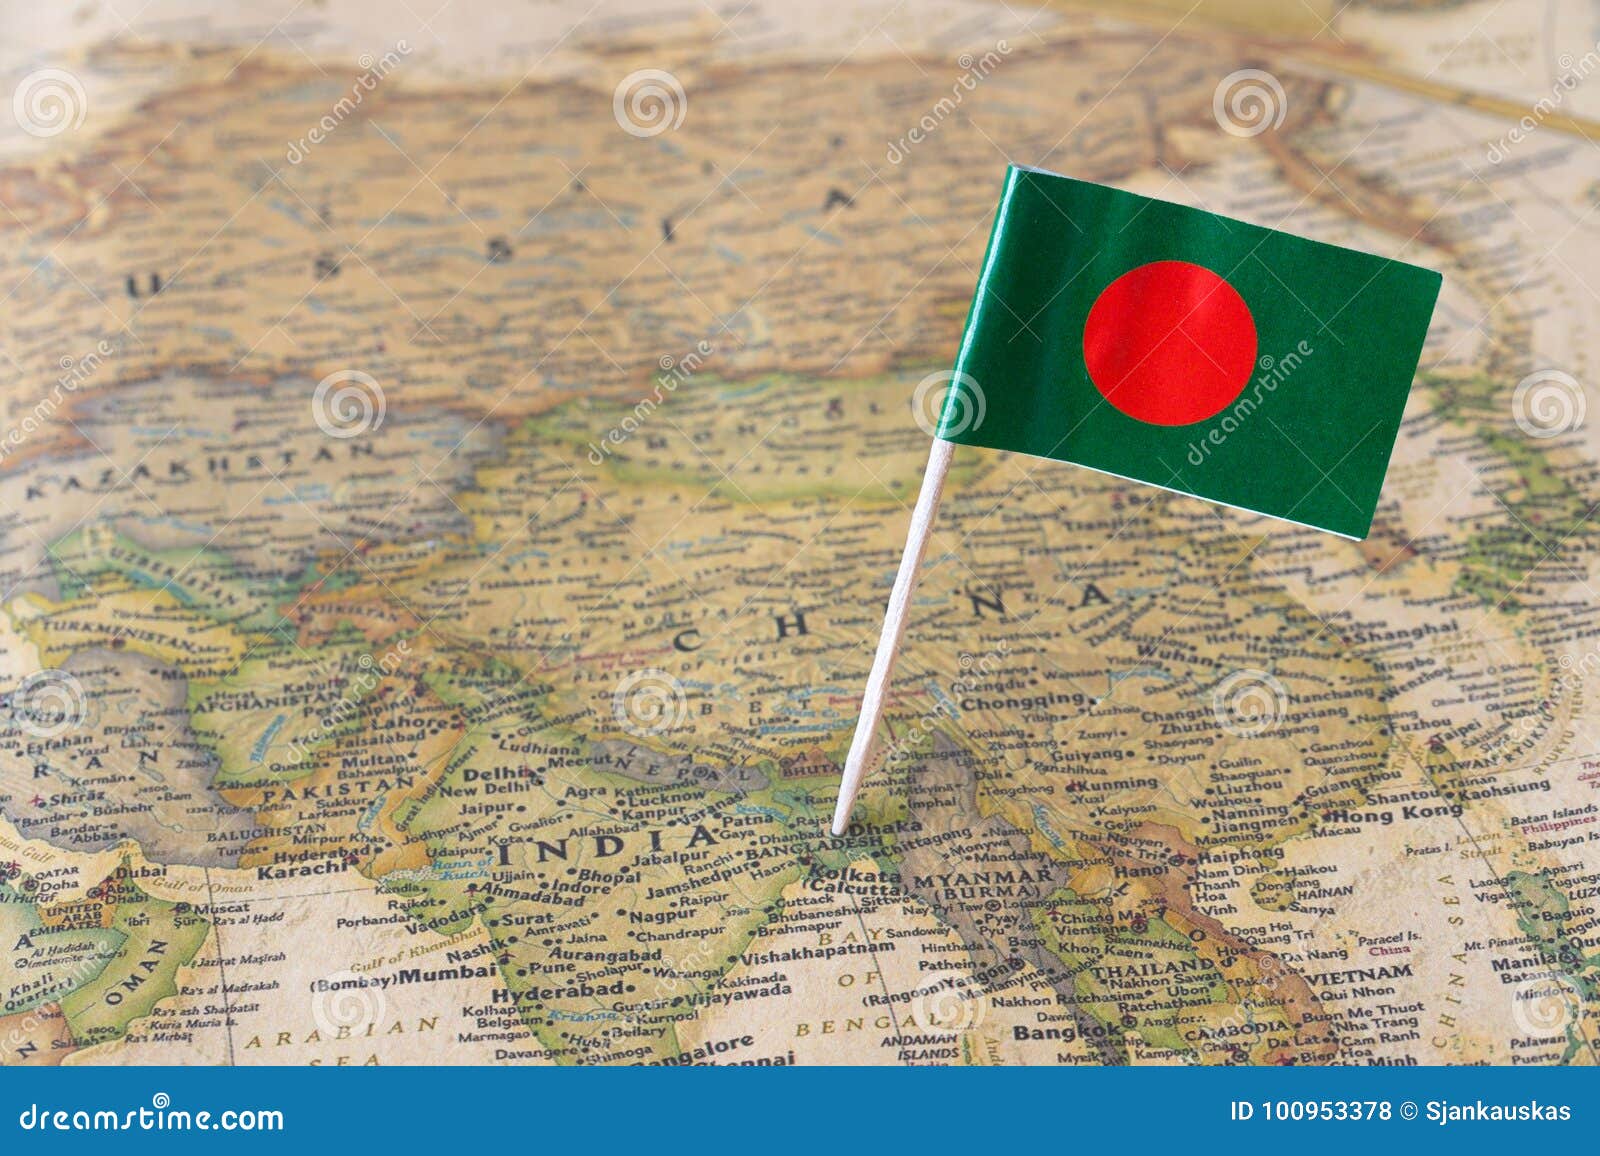 bangladesh flag on a map